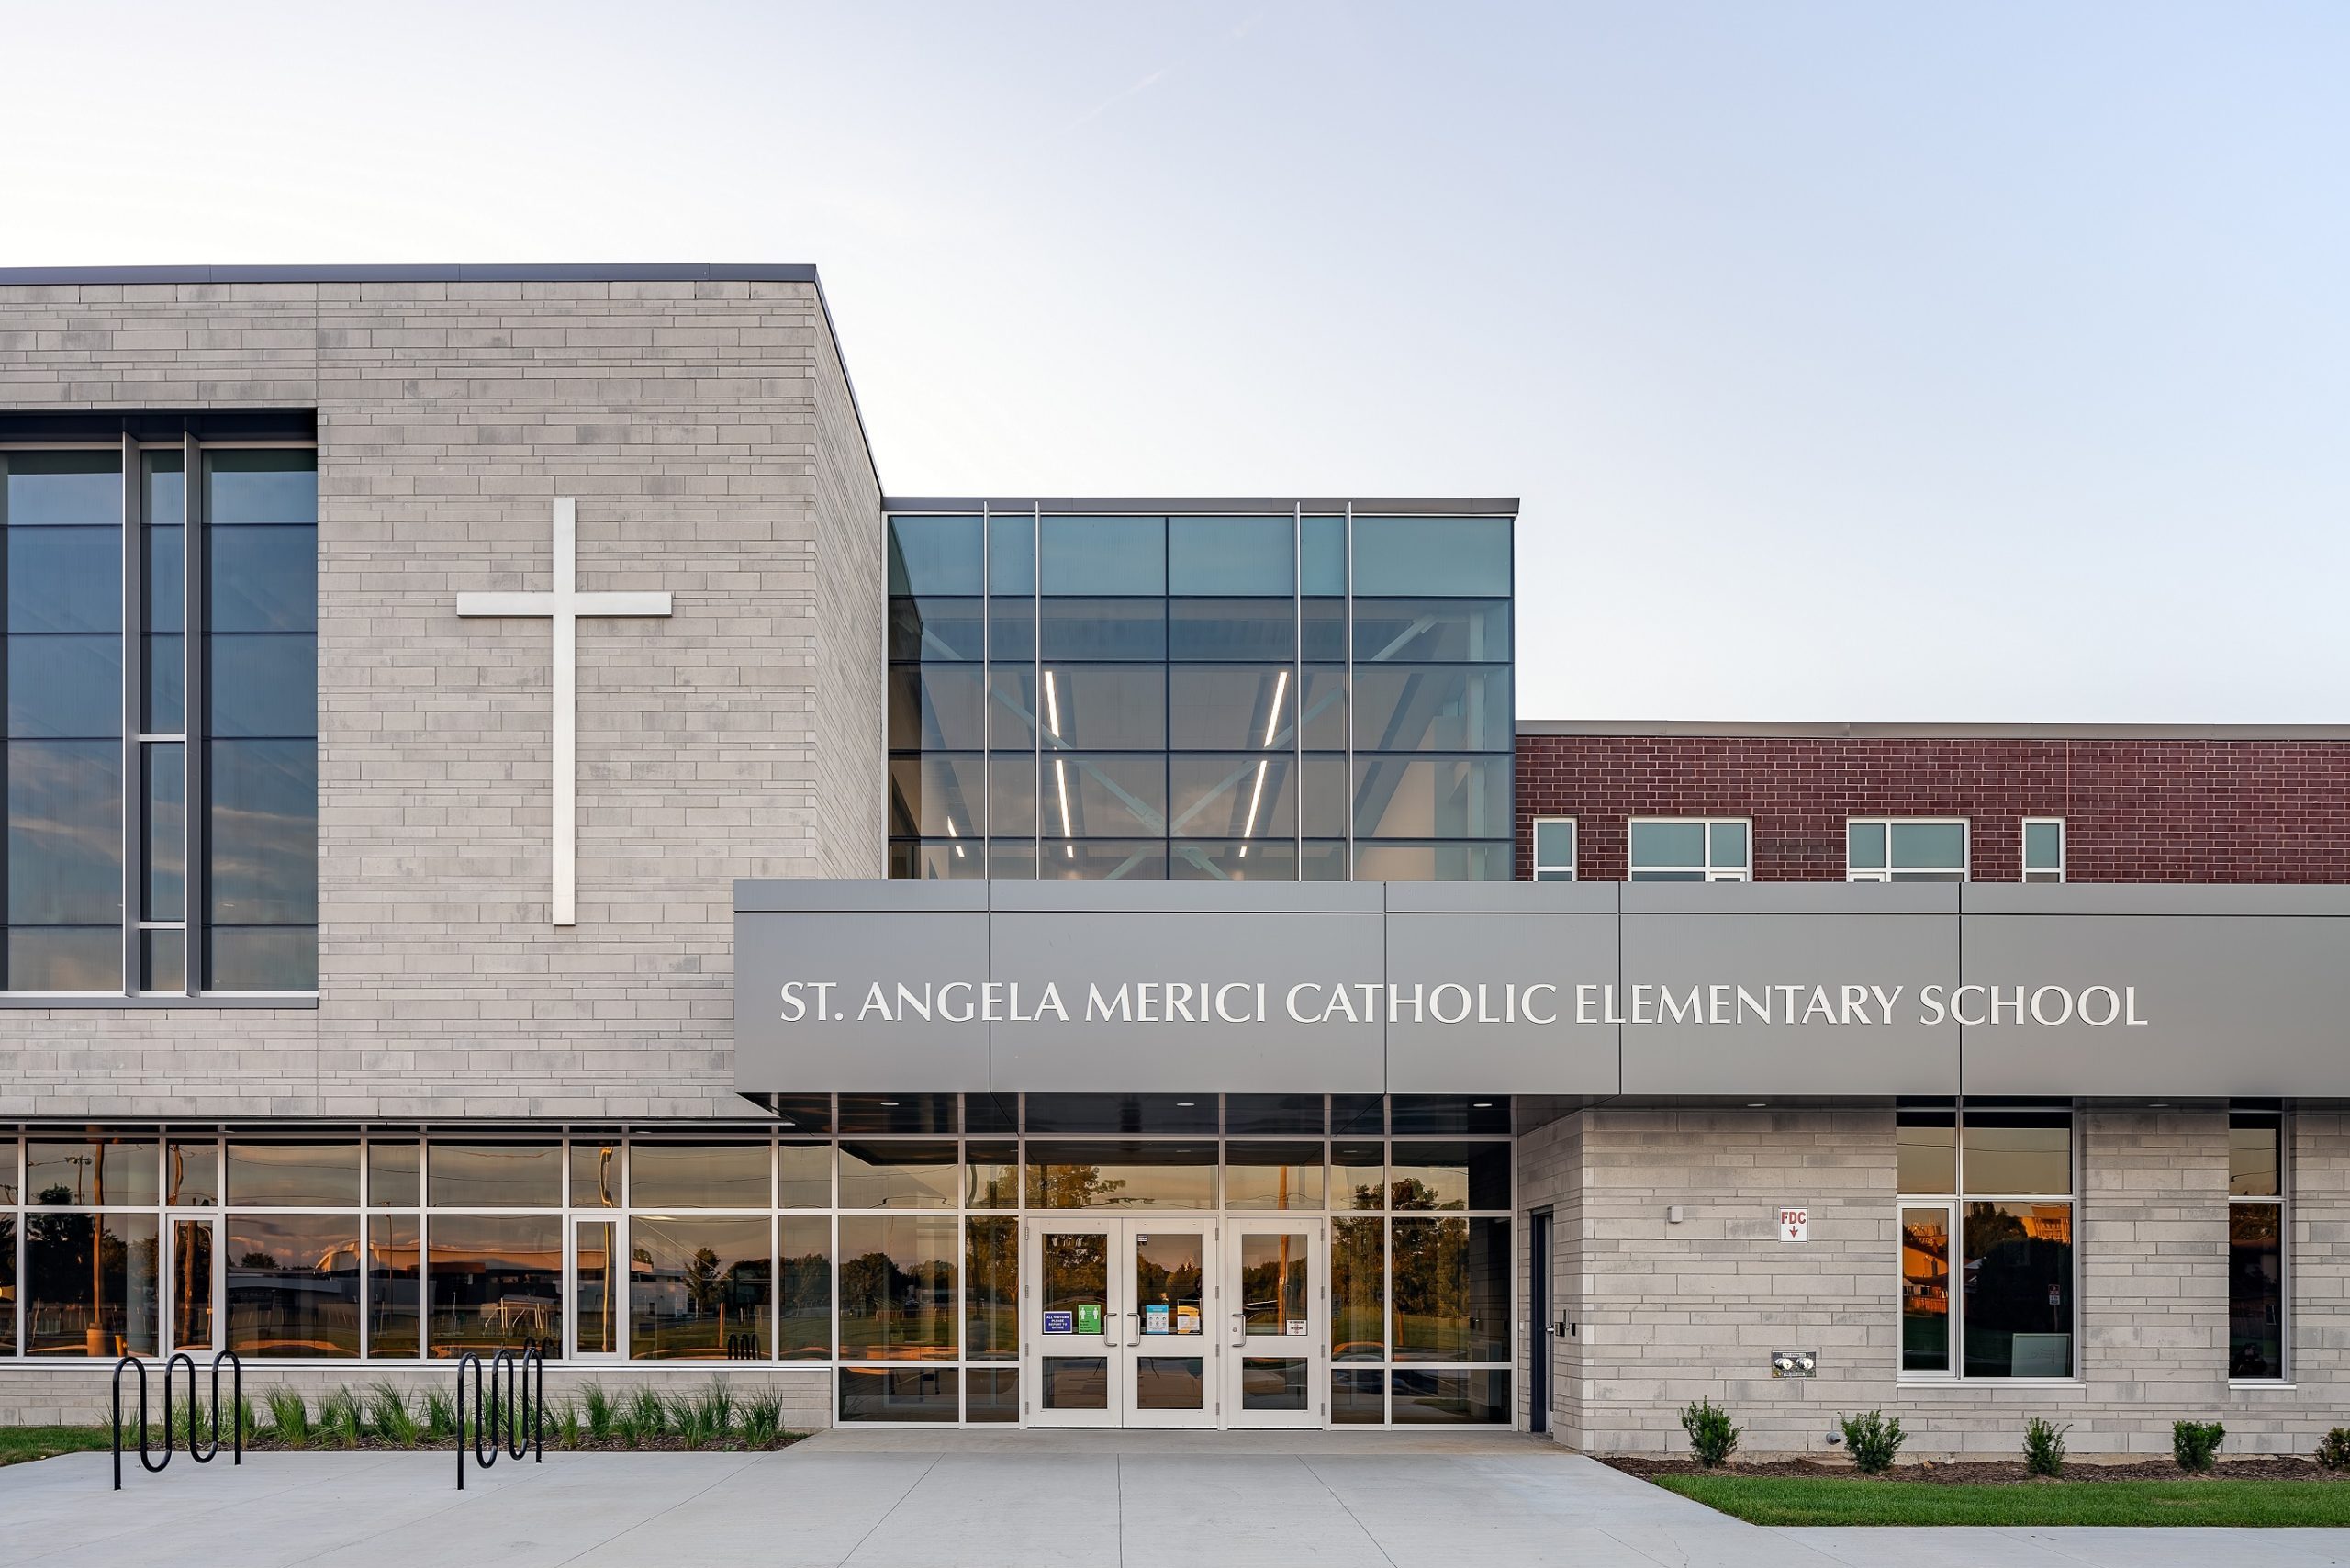 St. Angela Merici Catholic Elementary School